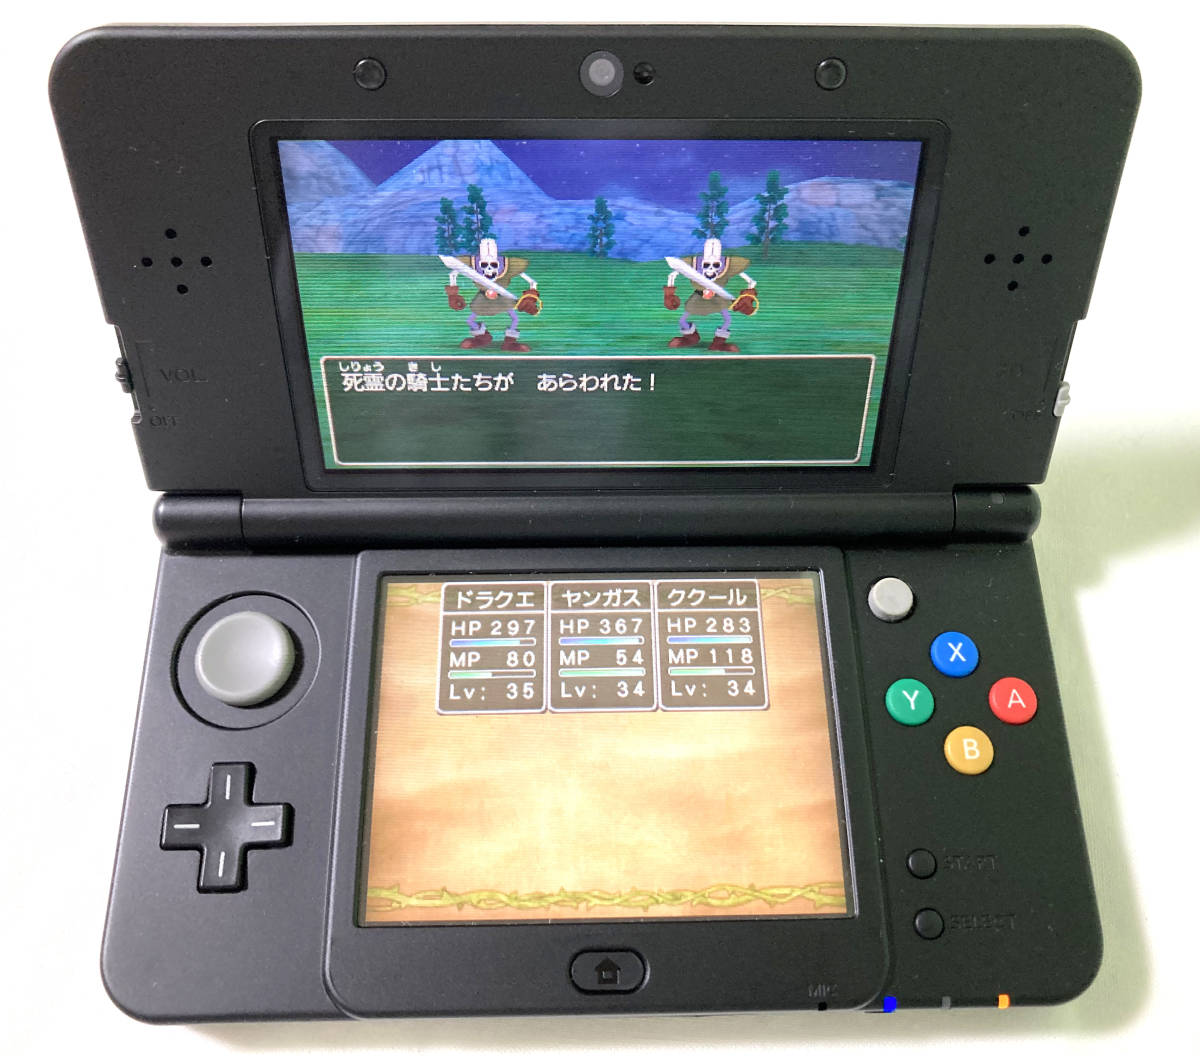 【送料無料】Newニンテンドー3DS本体(KTR-001/ブラック) 任天堂 Nintendo 3DS